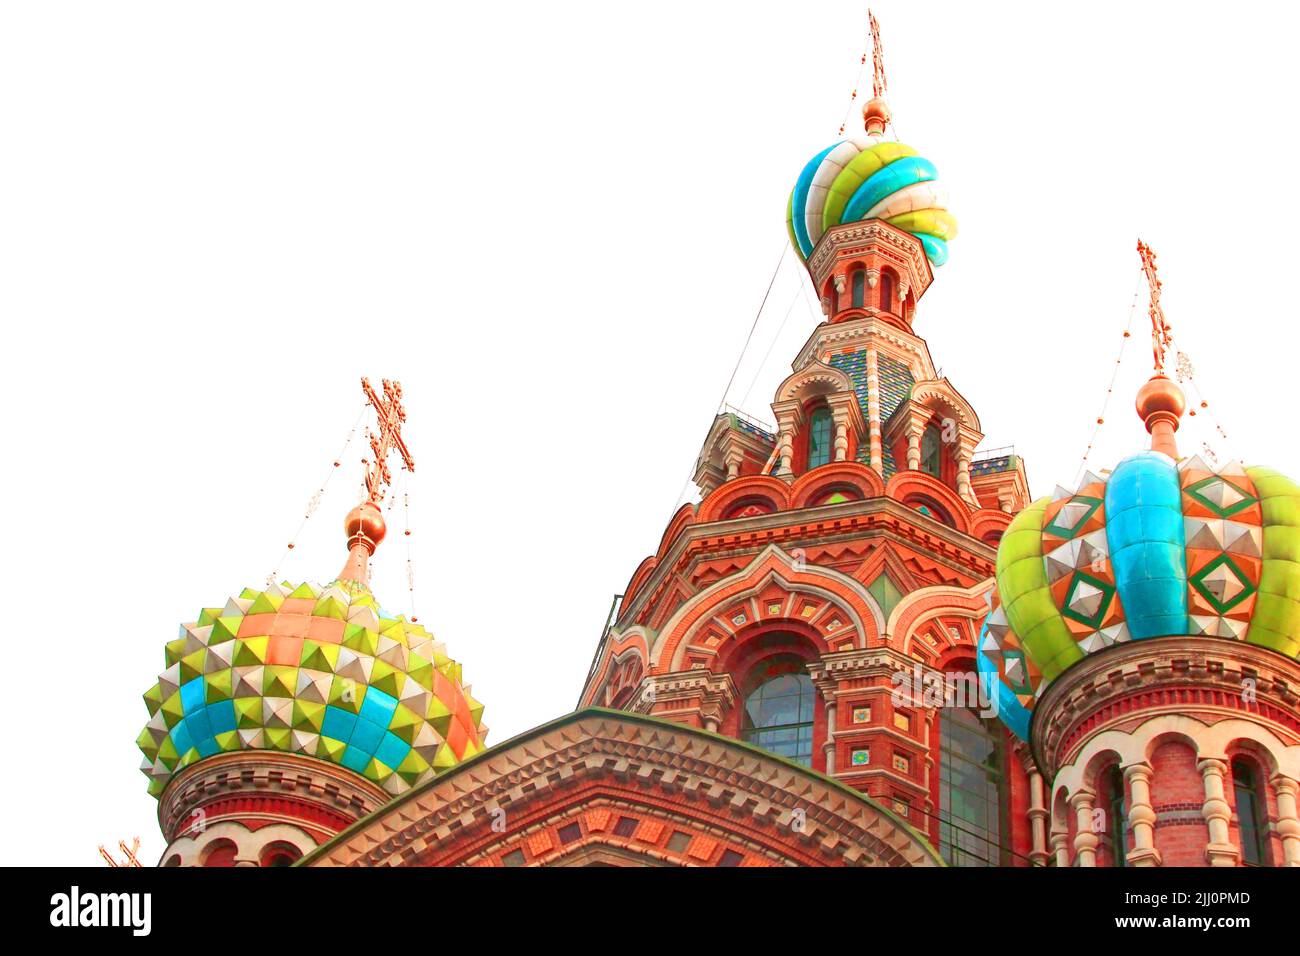 tipica architettura russa, città di mosca. Cupole colorate contro un cielo illuminato. Icone architettoniche Foto Stock